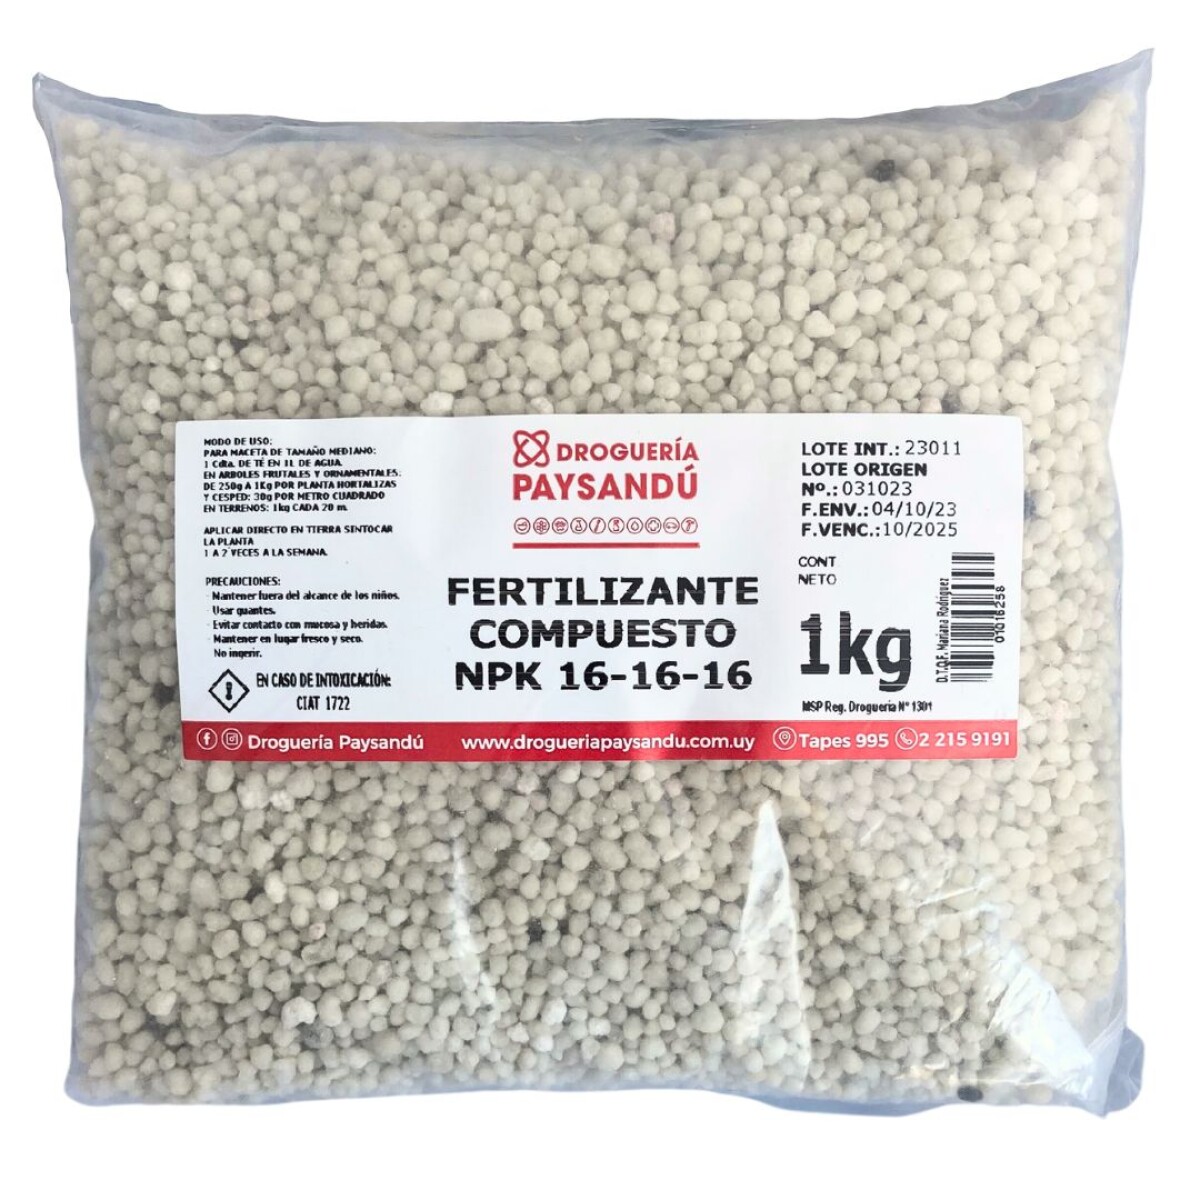 Fertilizante Compuesto NPK 16-16-16 - 1 Kg 